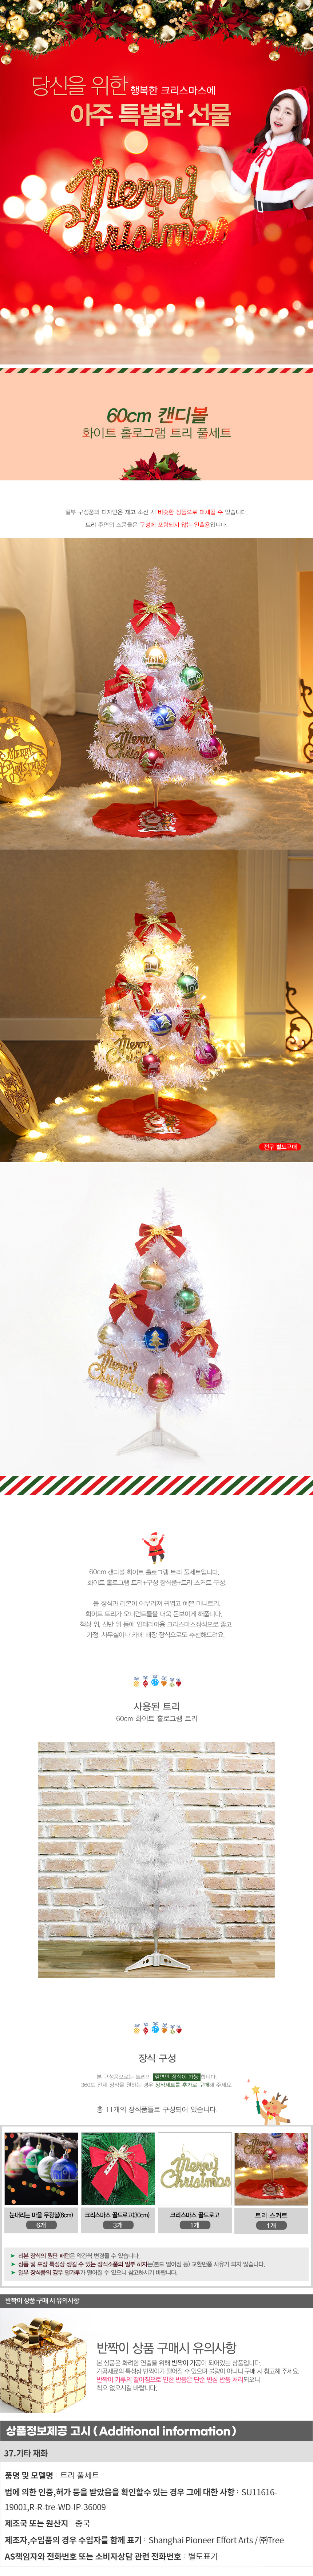 크리스마스트리 나무 장식 풀세트 화이트 캔디볼 60cm